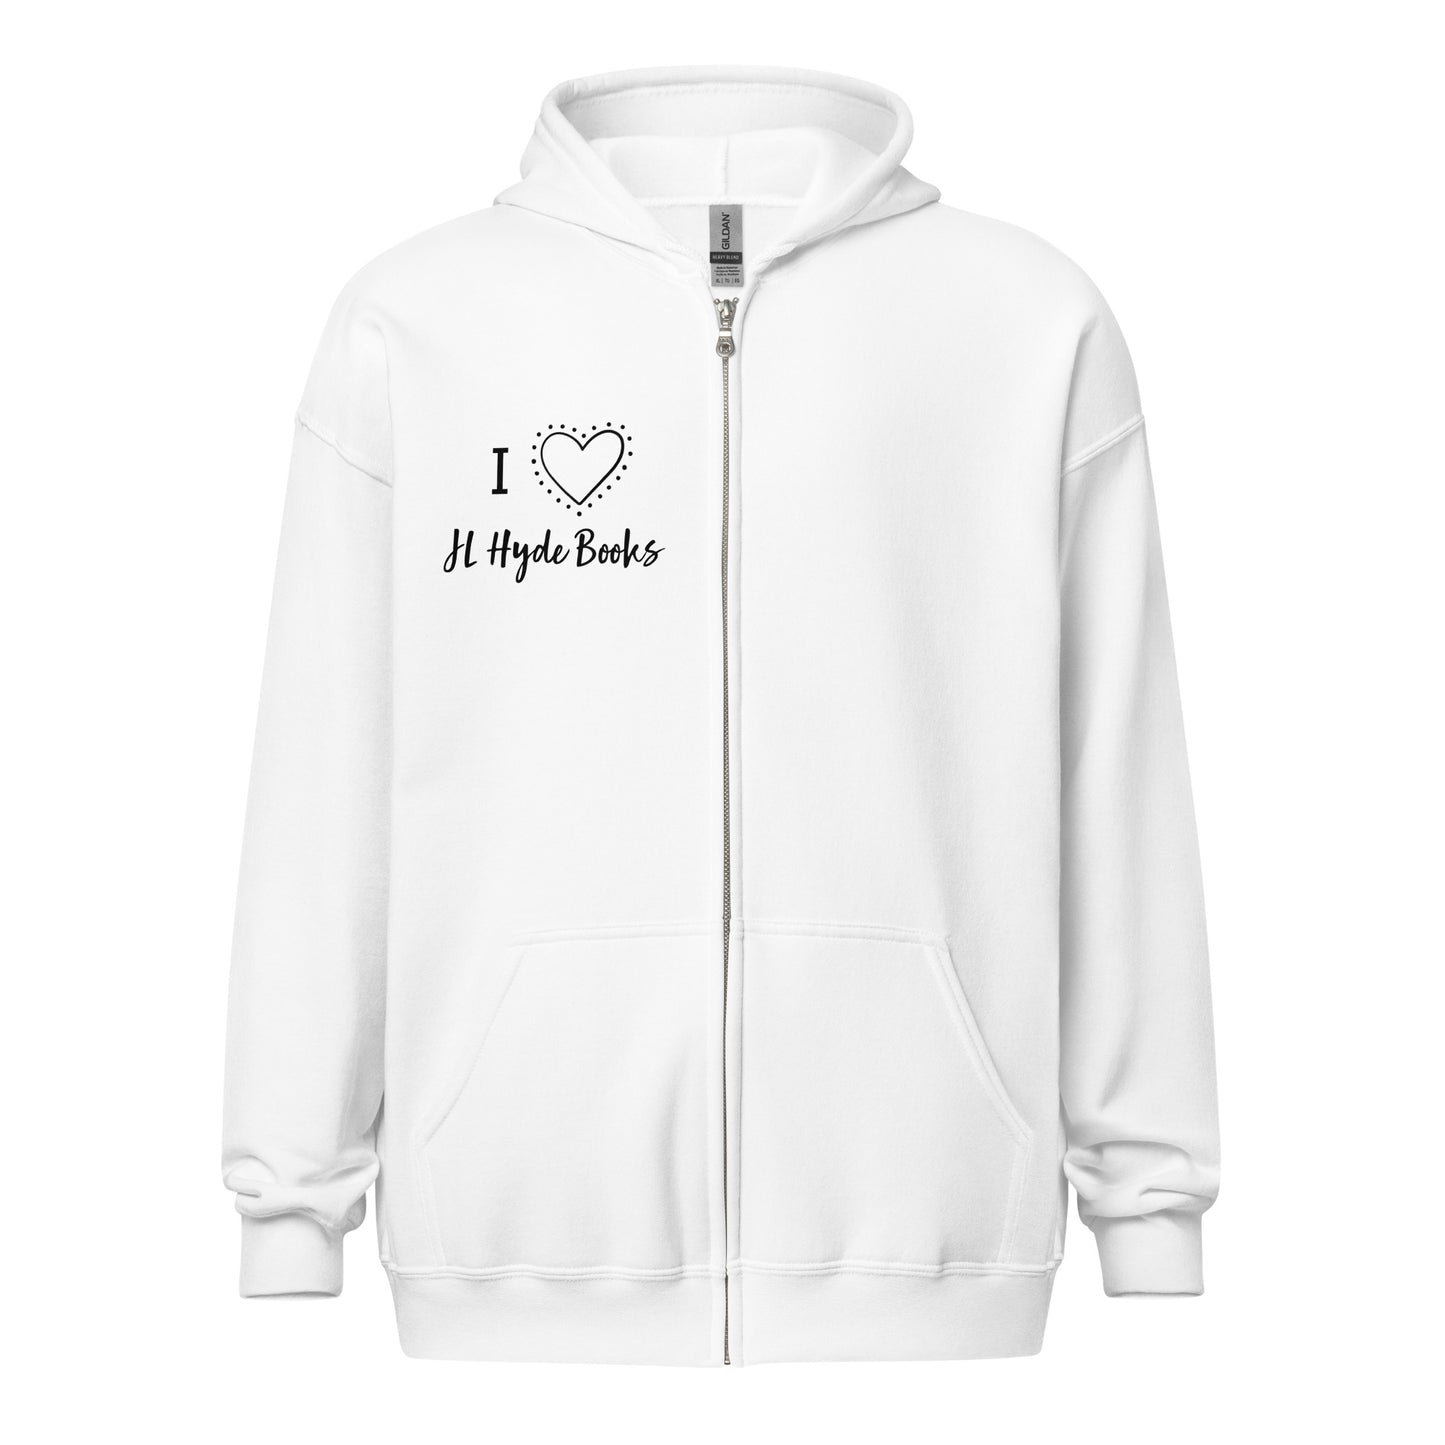 Unisex JL Hyde blend zip hoodie